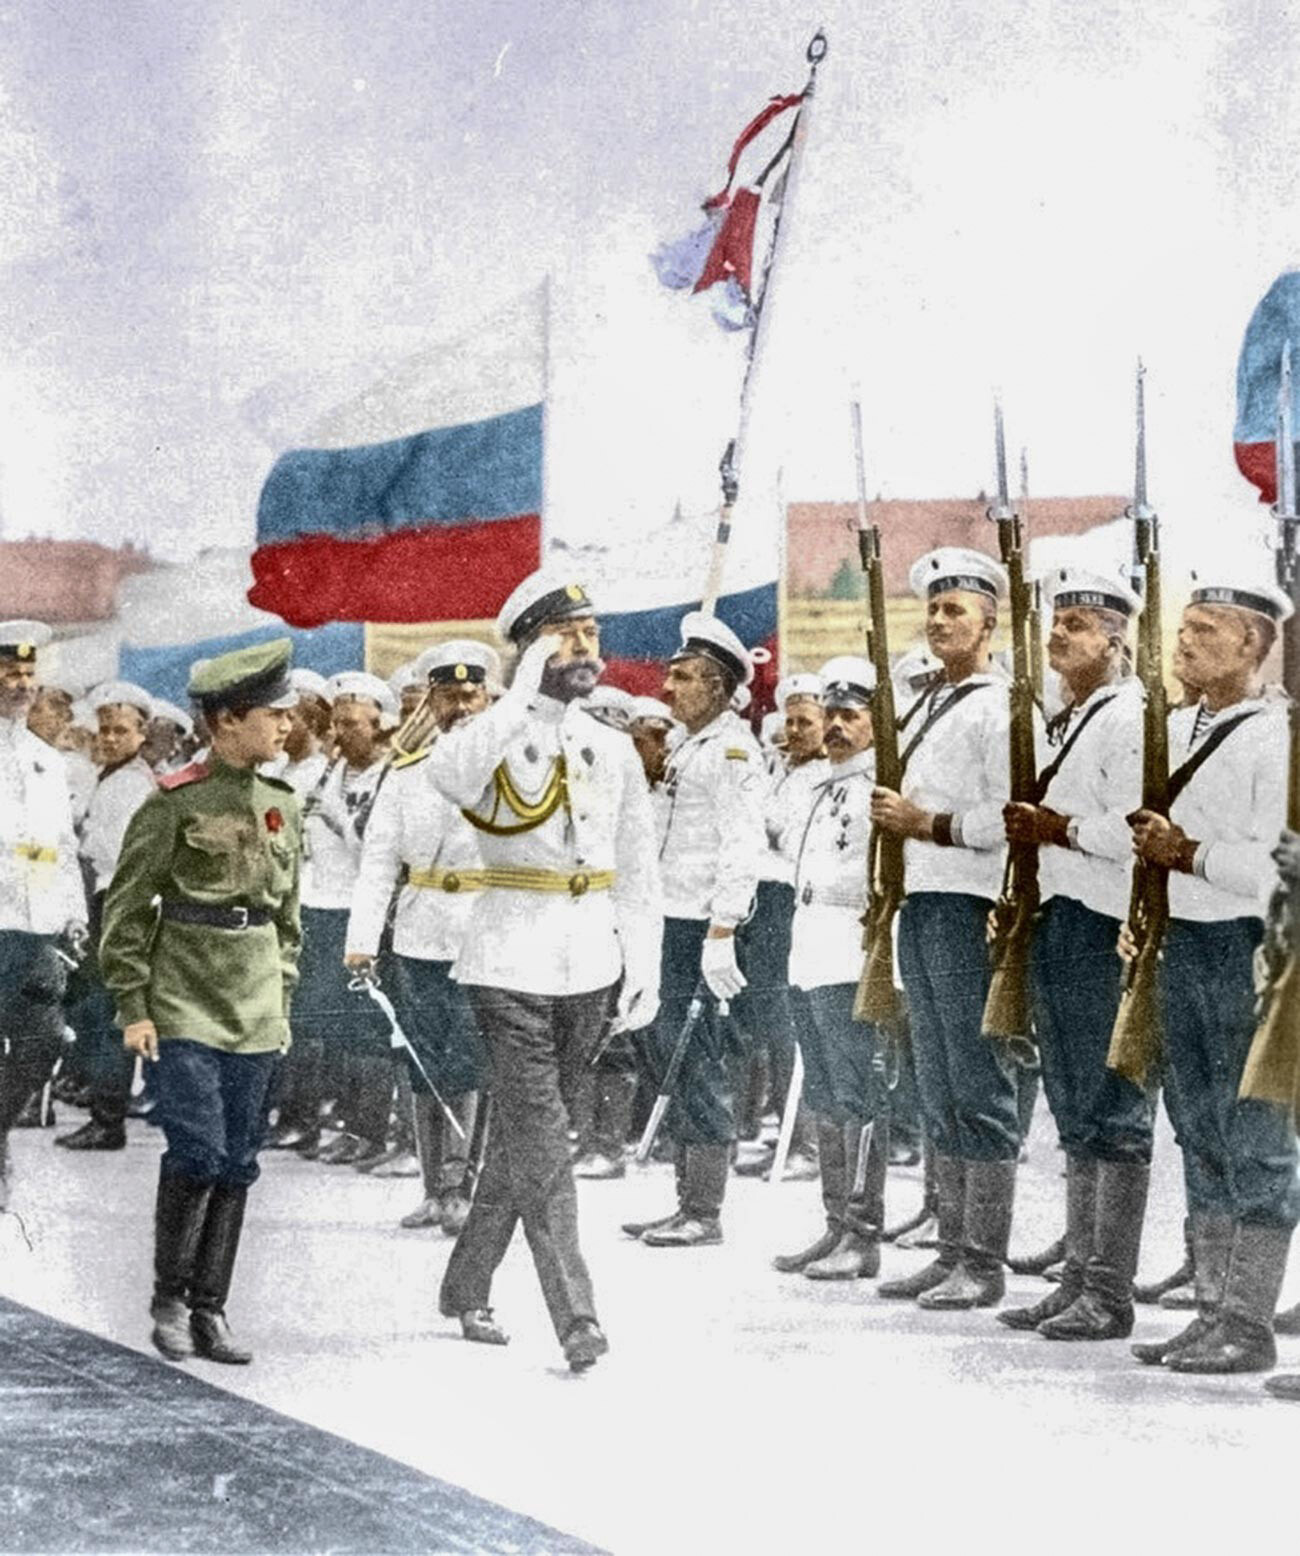 Цар Николај II је прогласио бело-плаво-црвену заставу као националну заставу Русије 1896. године.